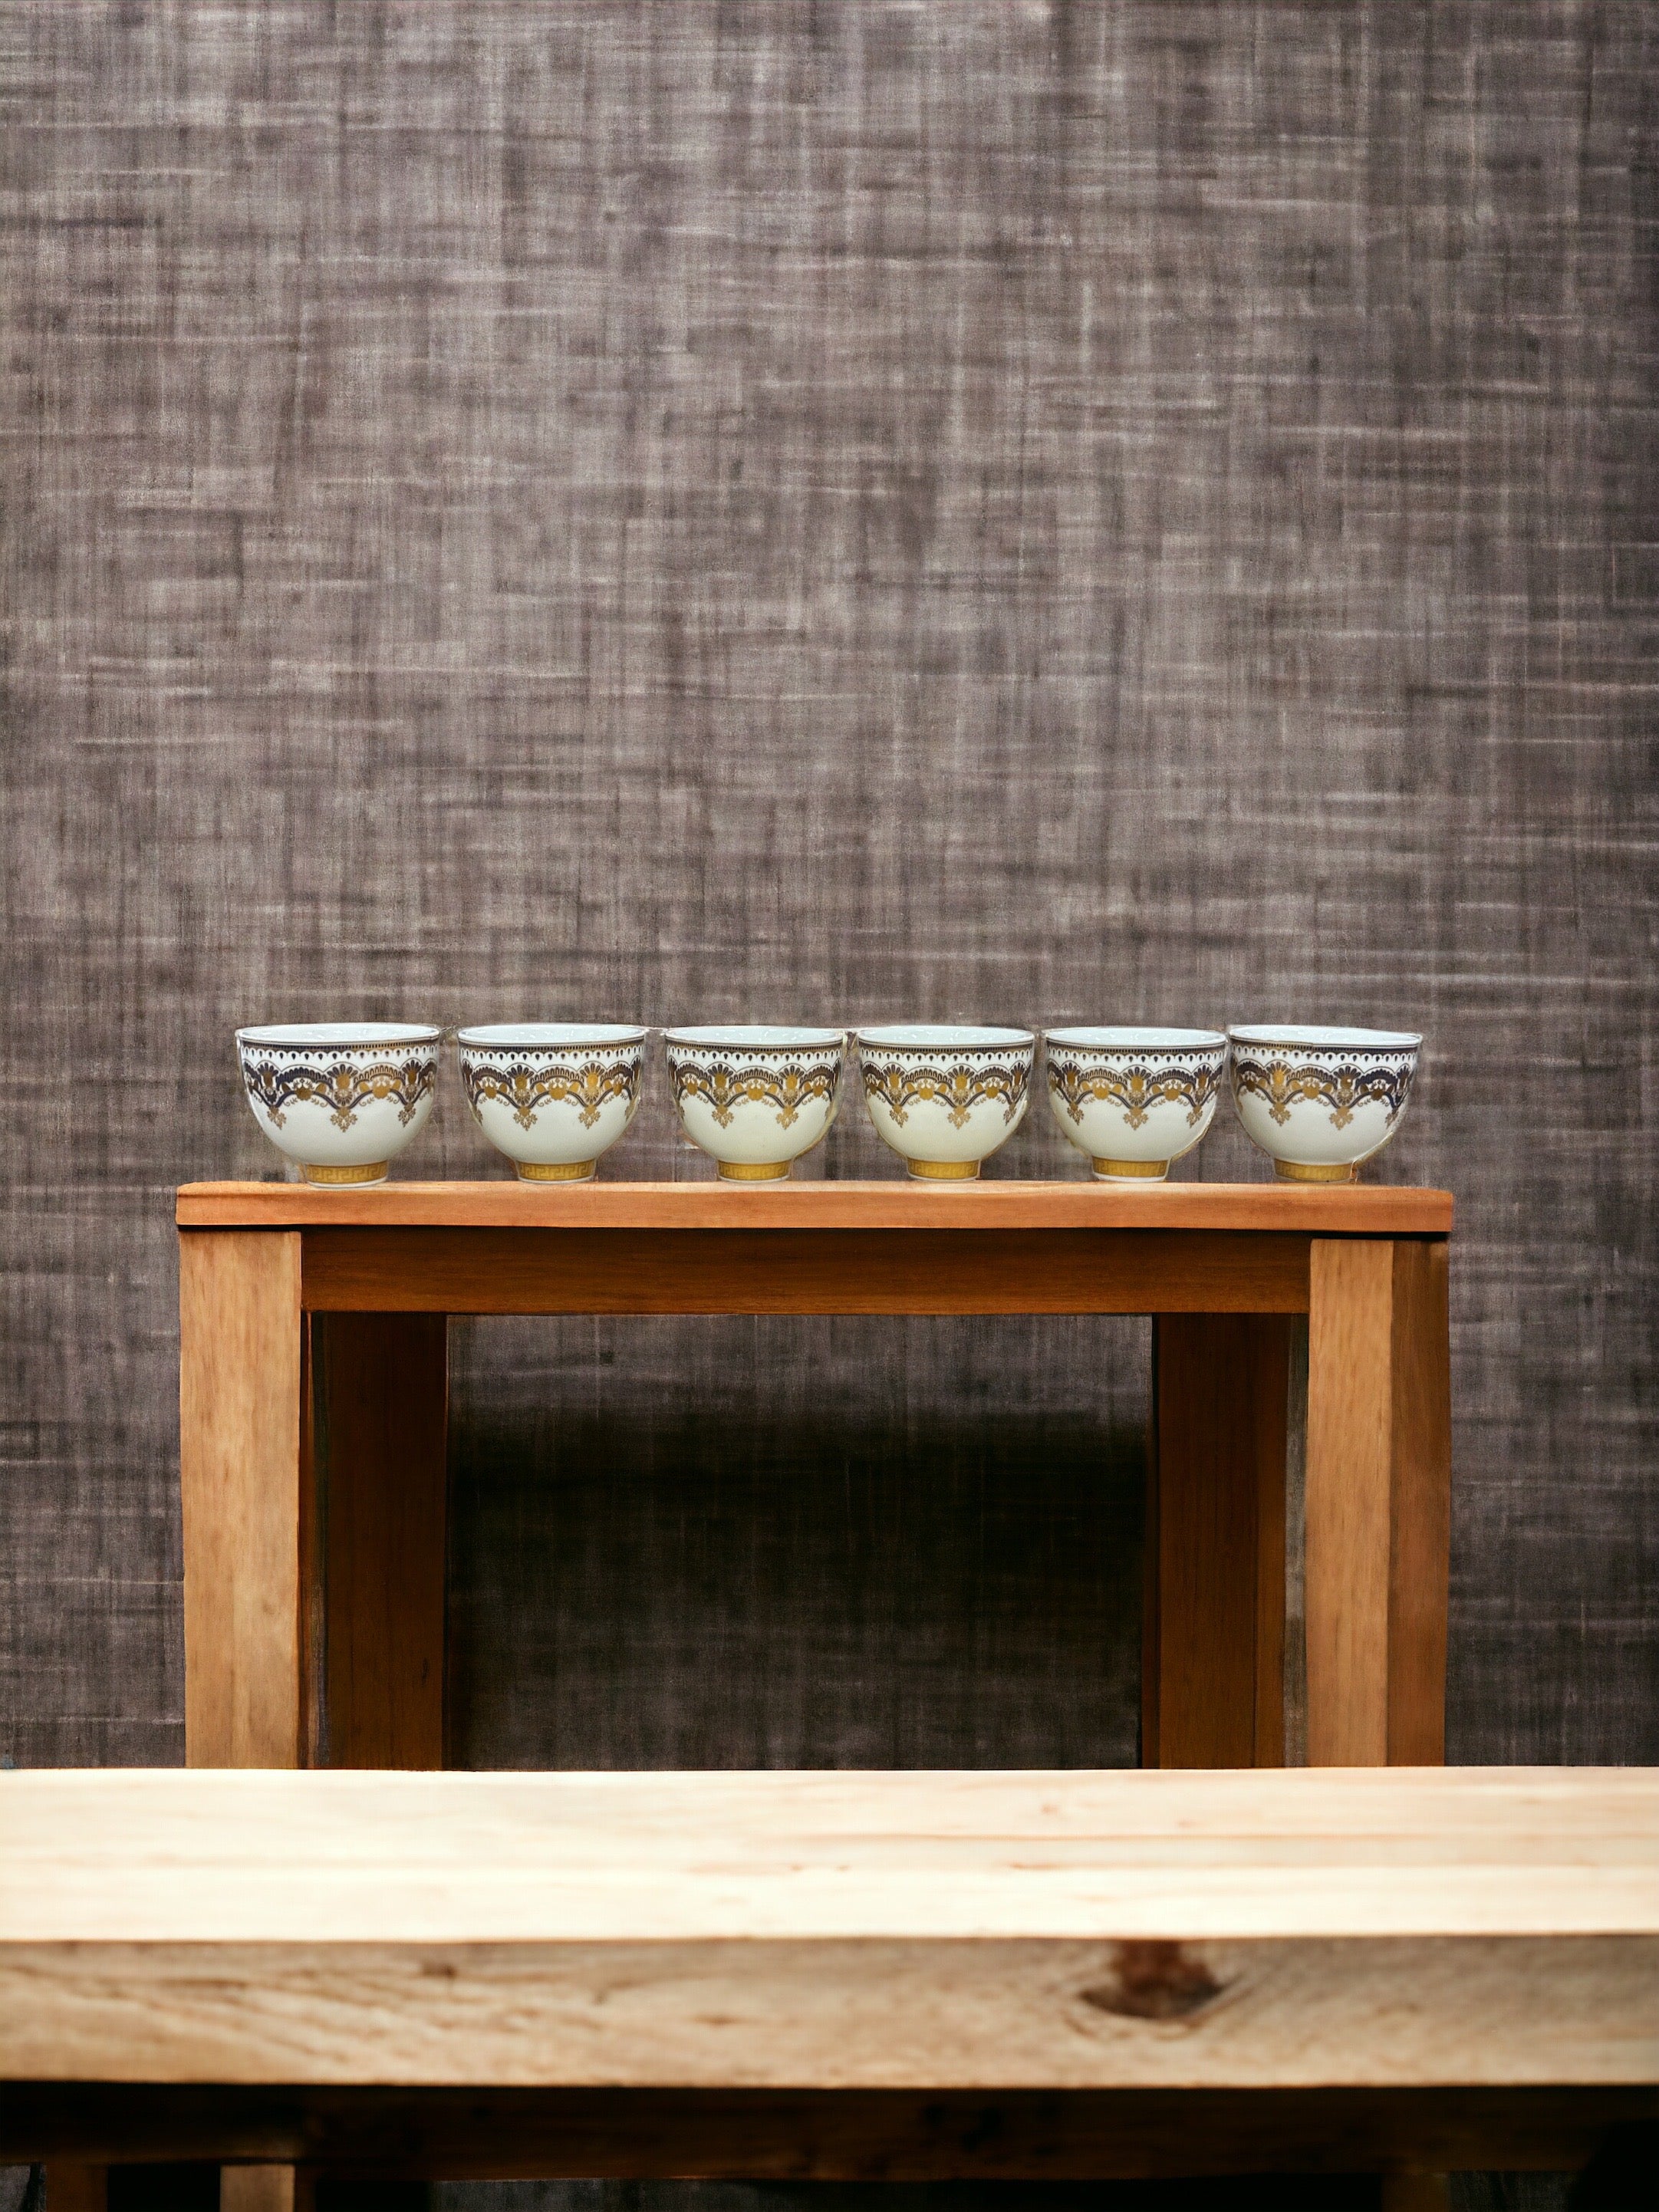 Ceramic Tea/Coffee Cup 12 Piece Set